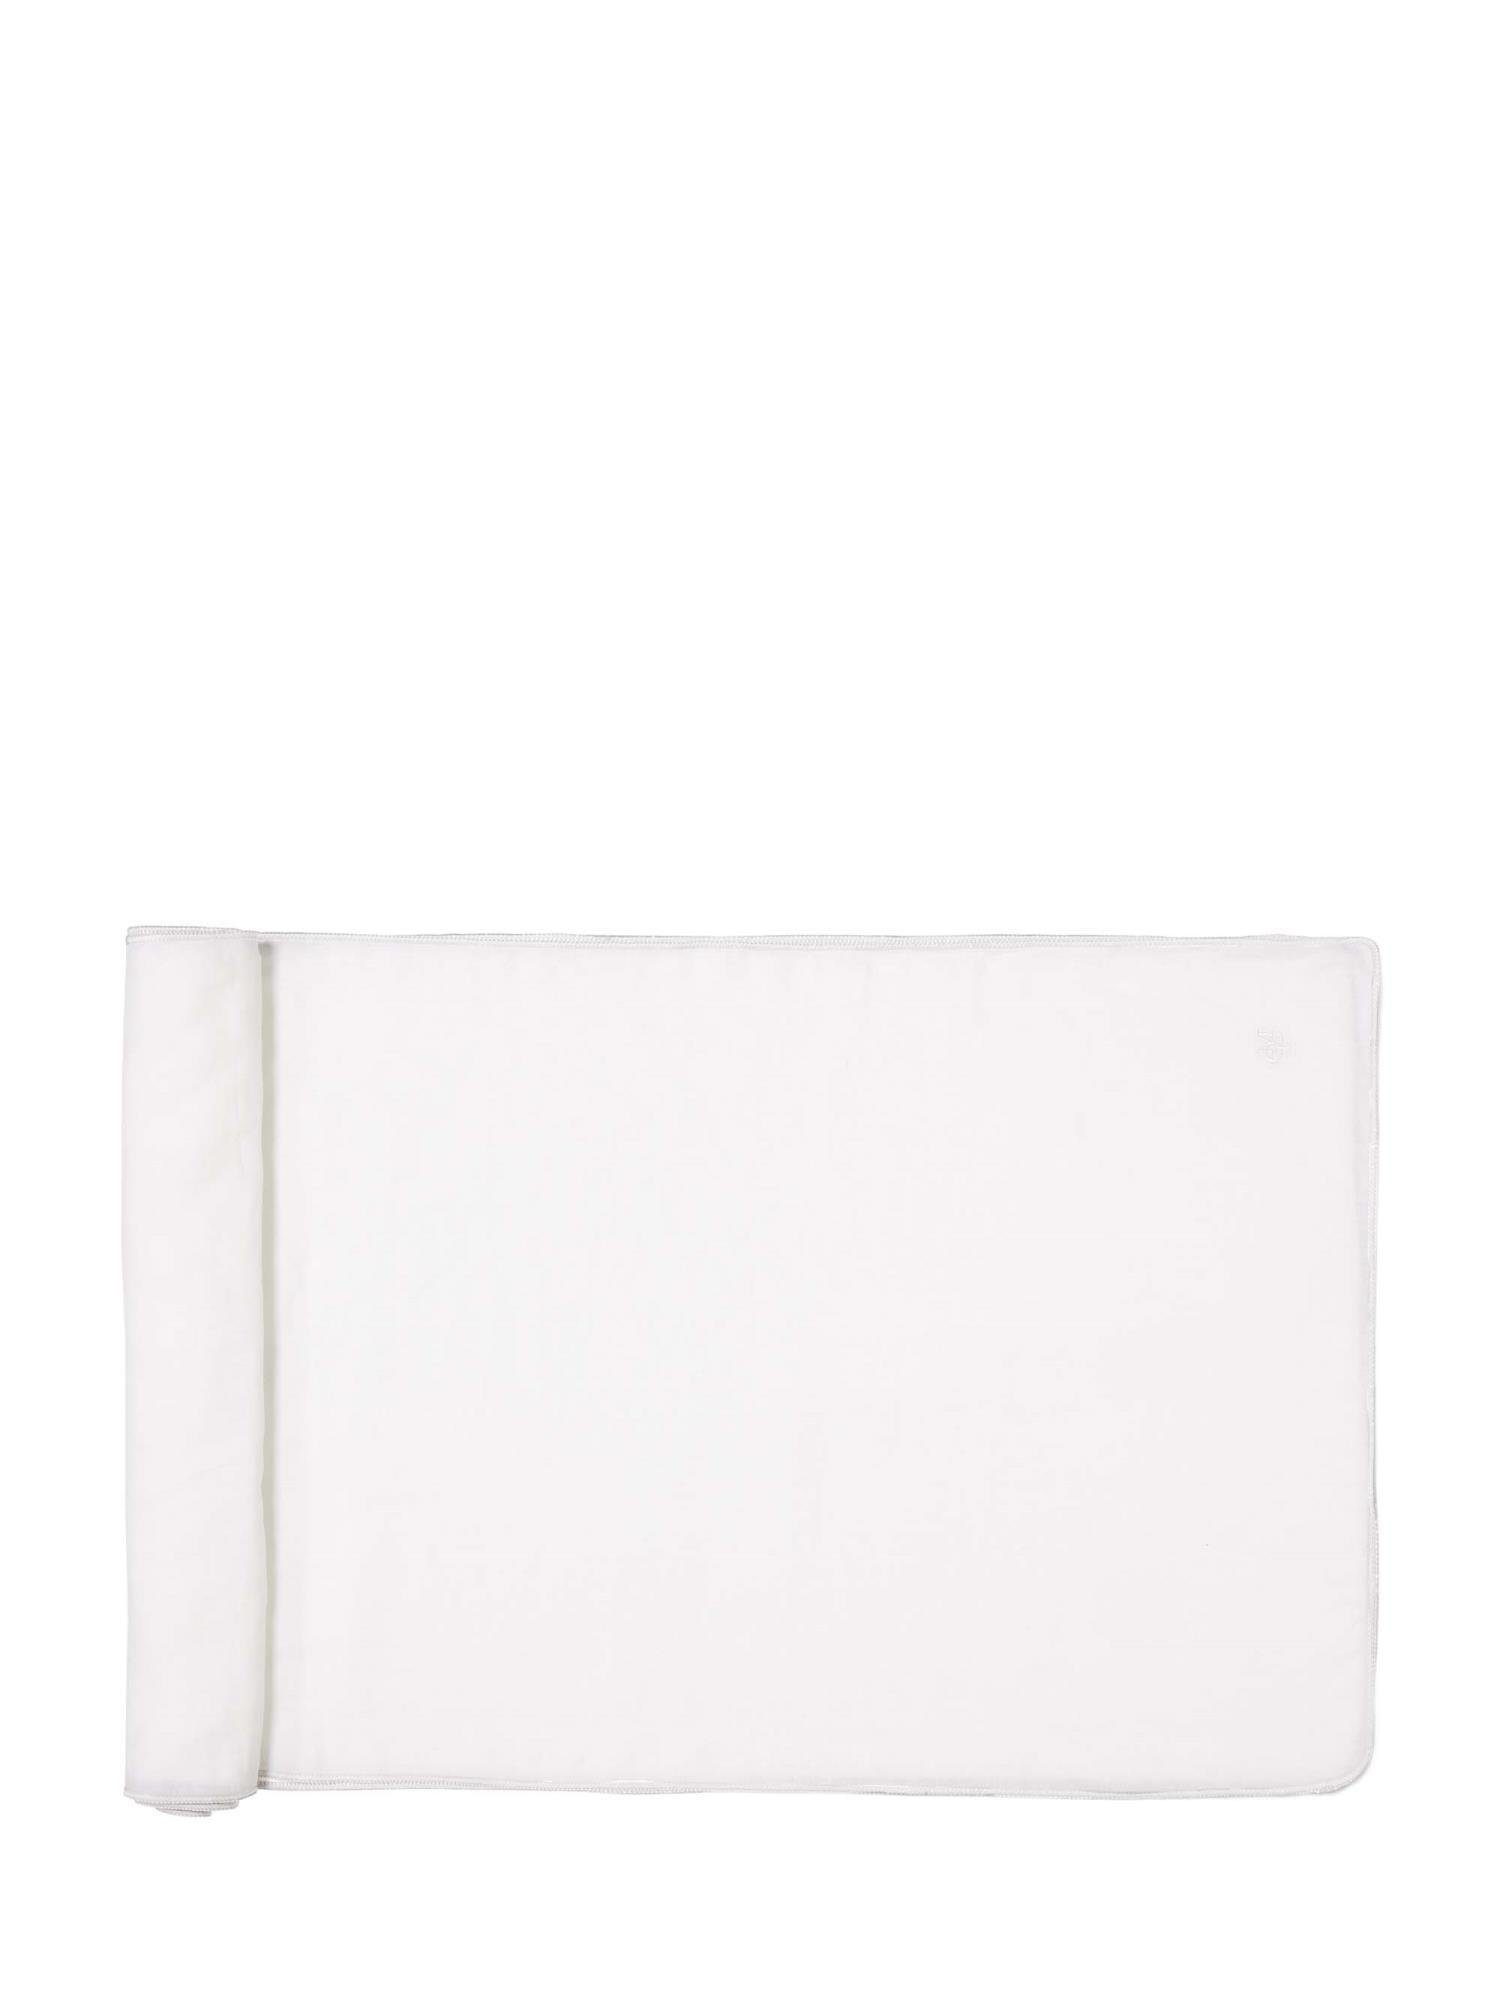 Marc O'Polo Home Tischläufer Valka (1-tlg), aus 100% Leinen, unifarben Weiß